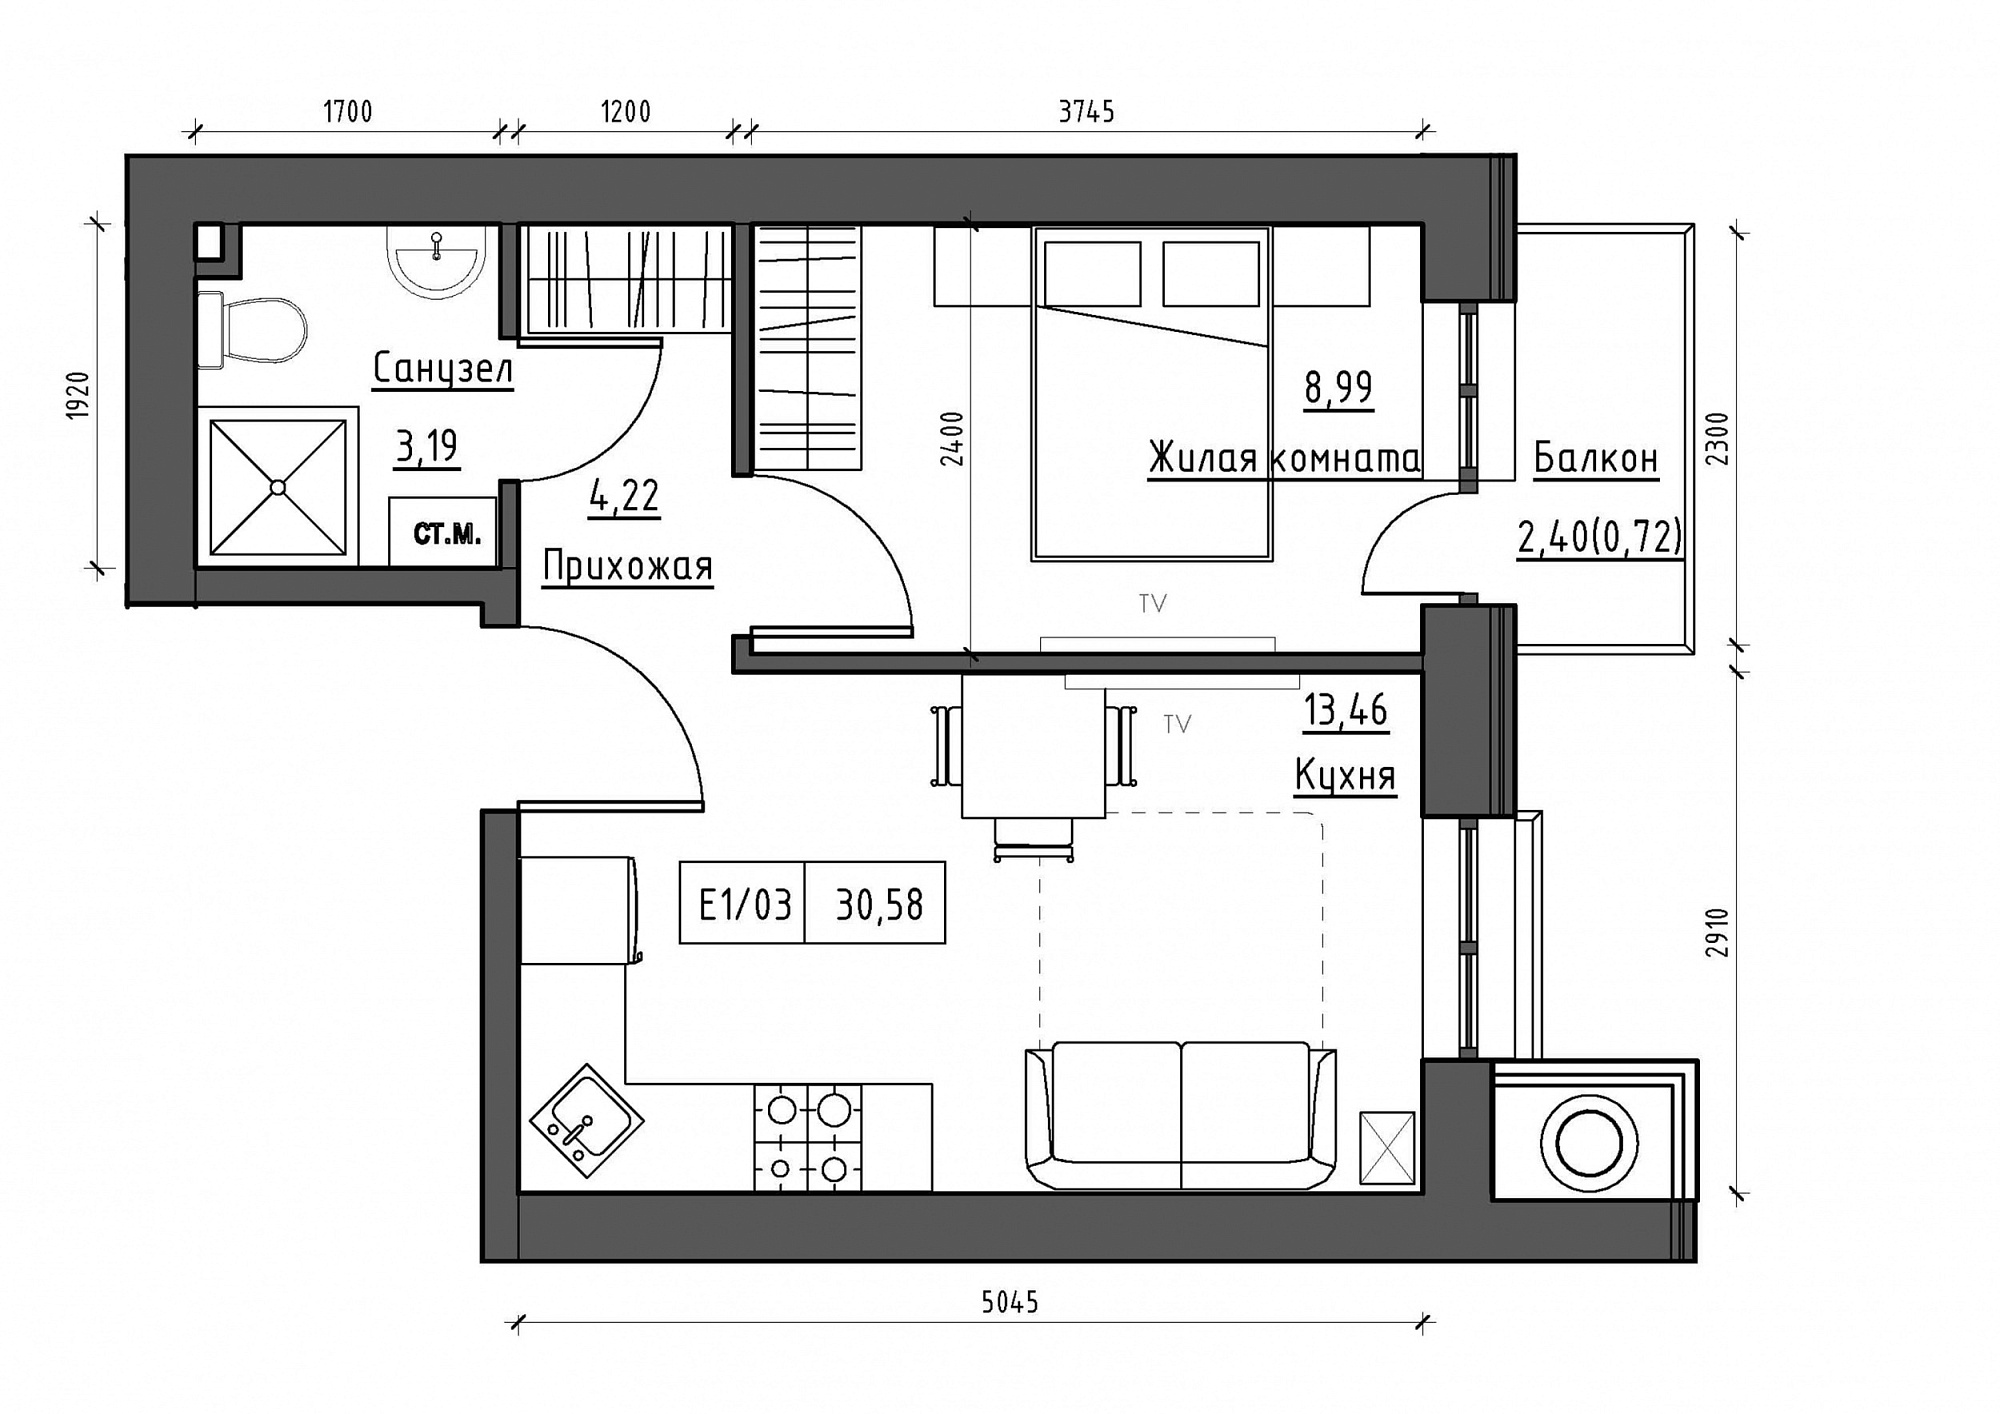 Планировка 1-к квартира площей 30.58м2, KS-012-04/0013.